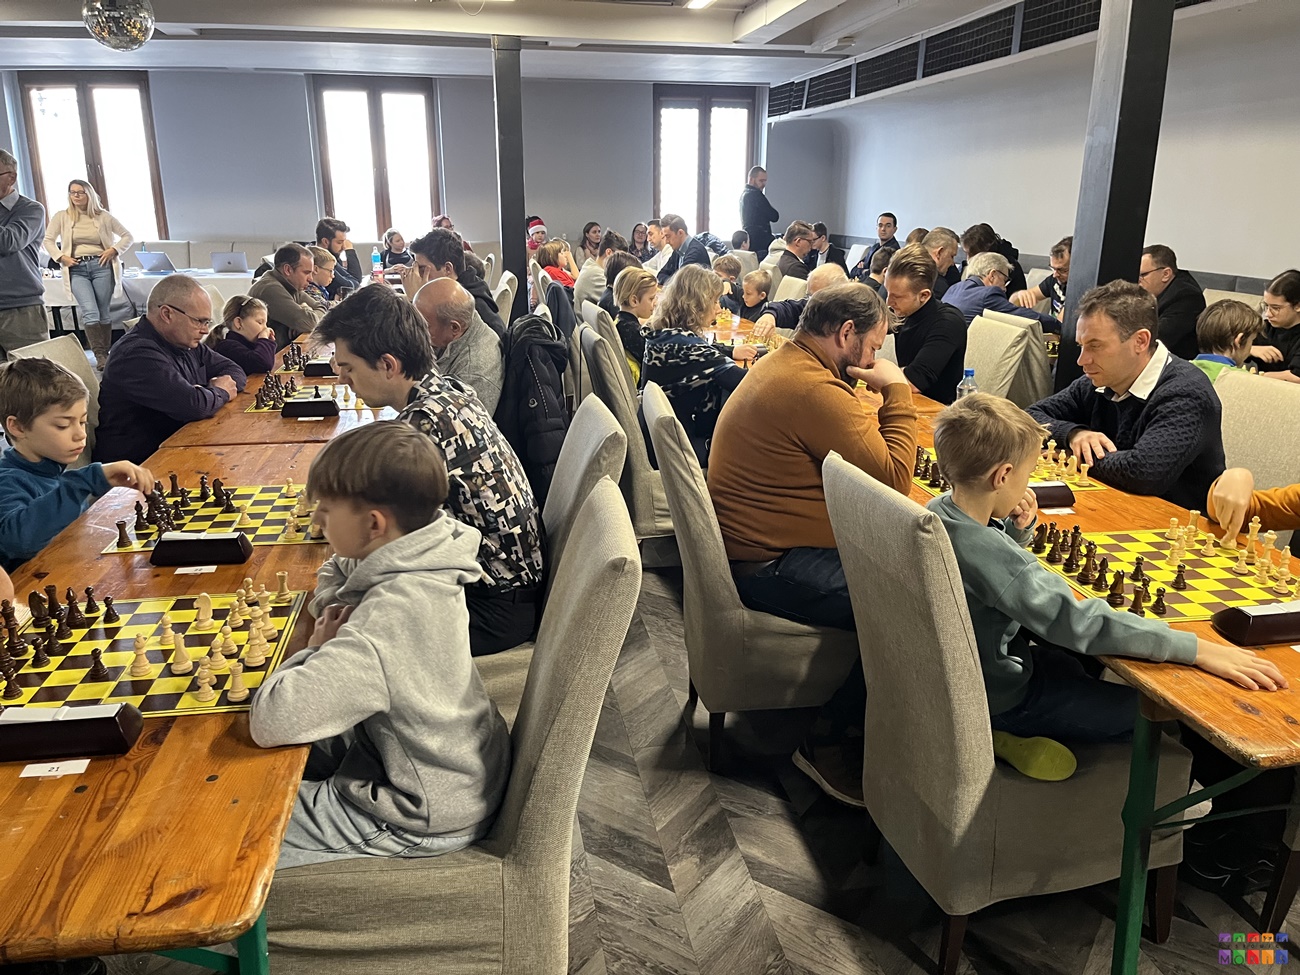 Zdjęcie przedstawia ogólny widok na salę widowiskową gdzie rozstawione są stoły, przy których siedzą ludzie grający w szachy.